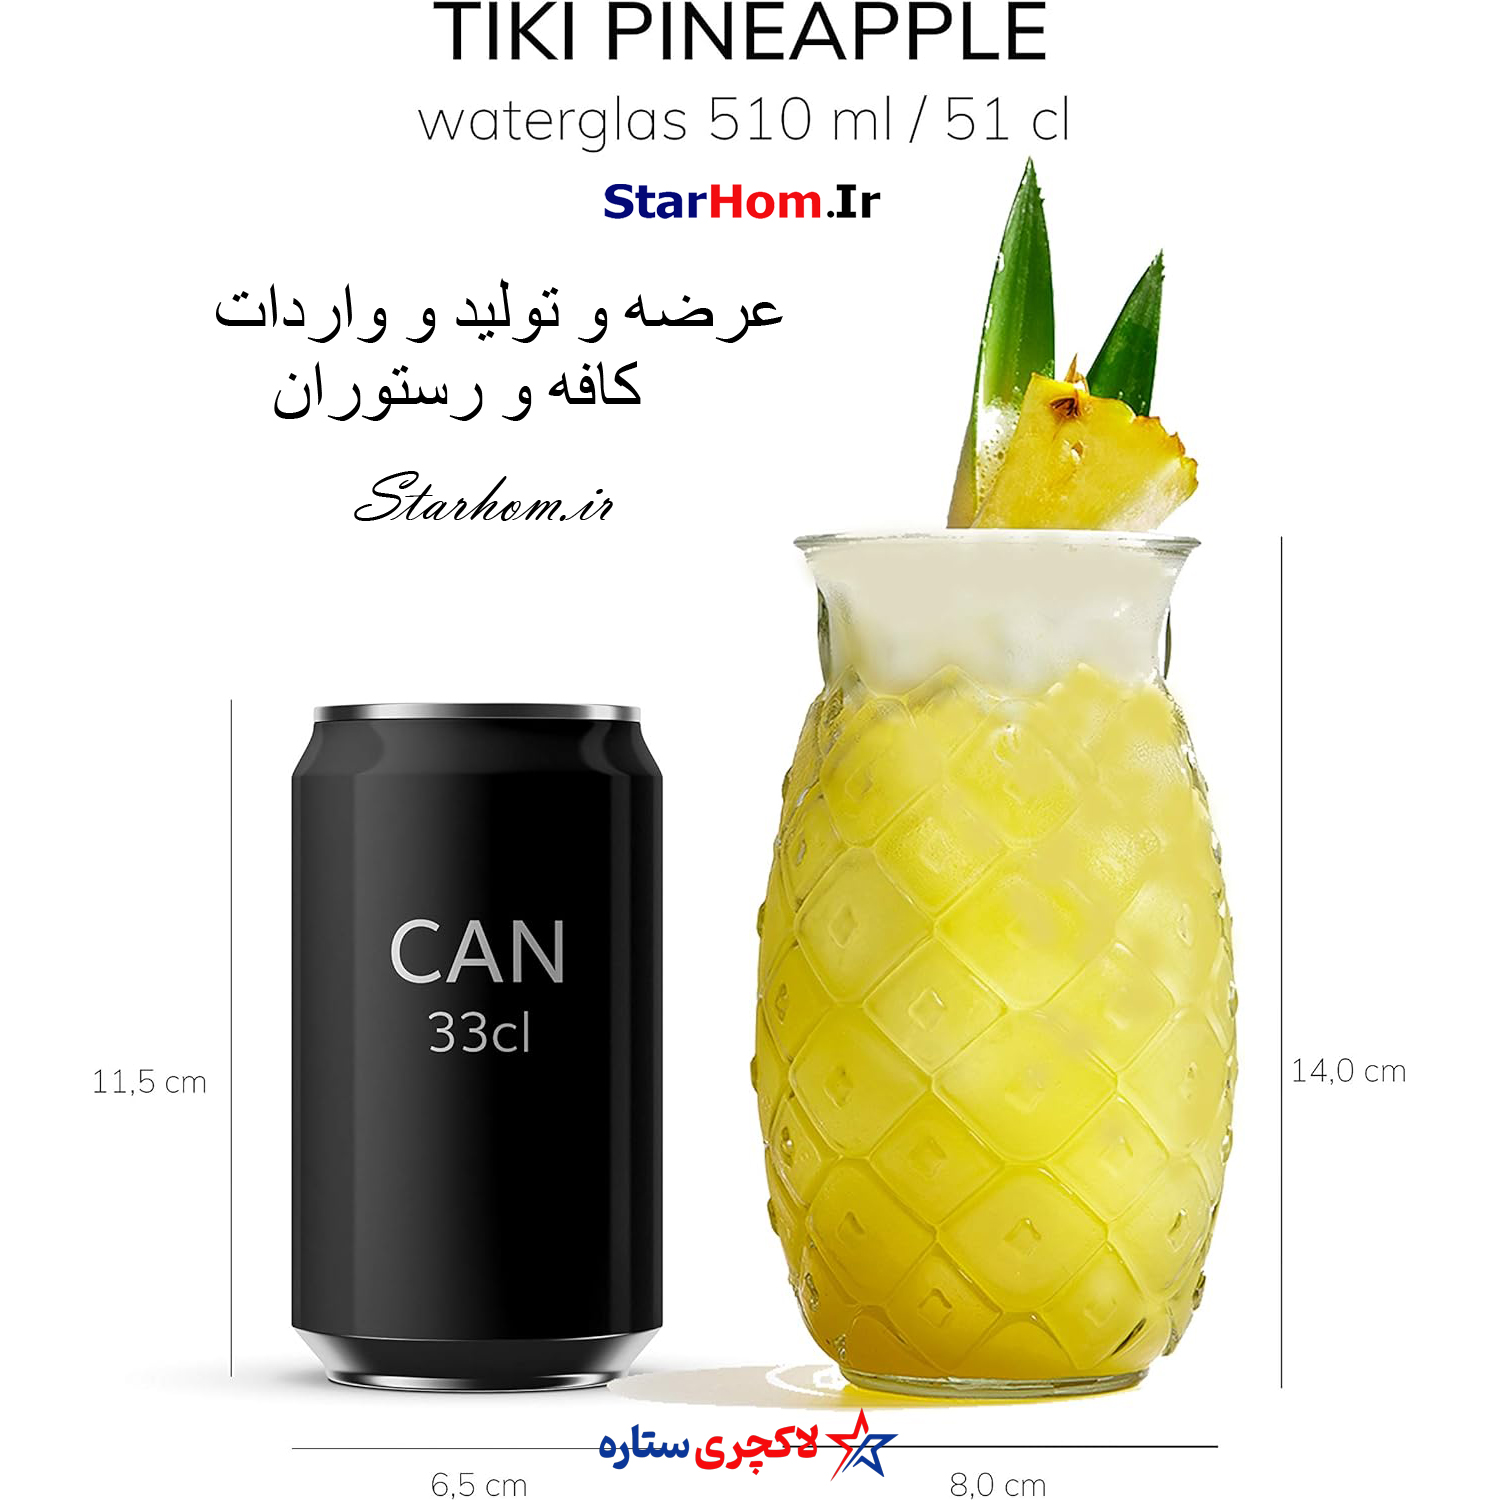 لیوان تیکی ماگ آناناس PineApple دست ساز ترکیه